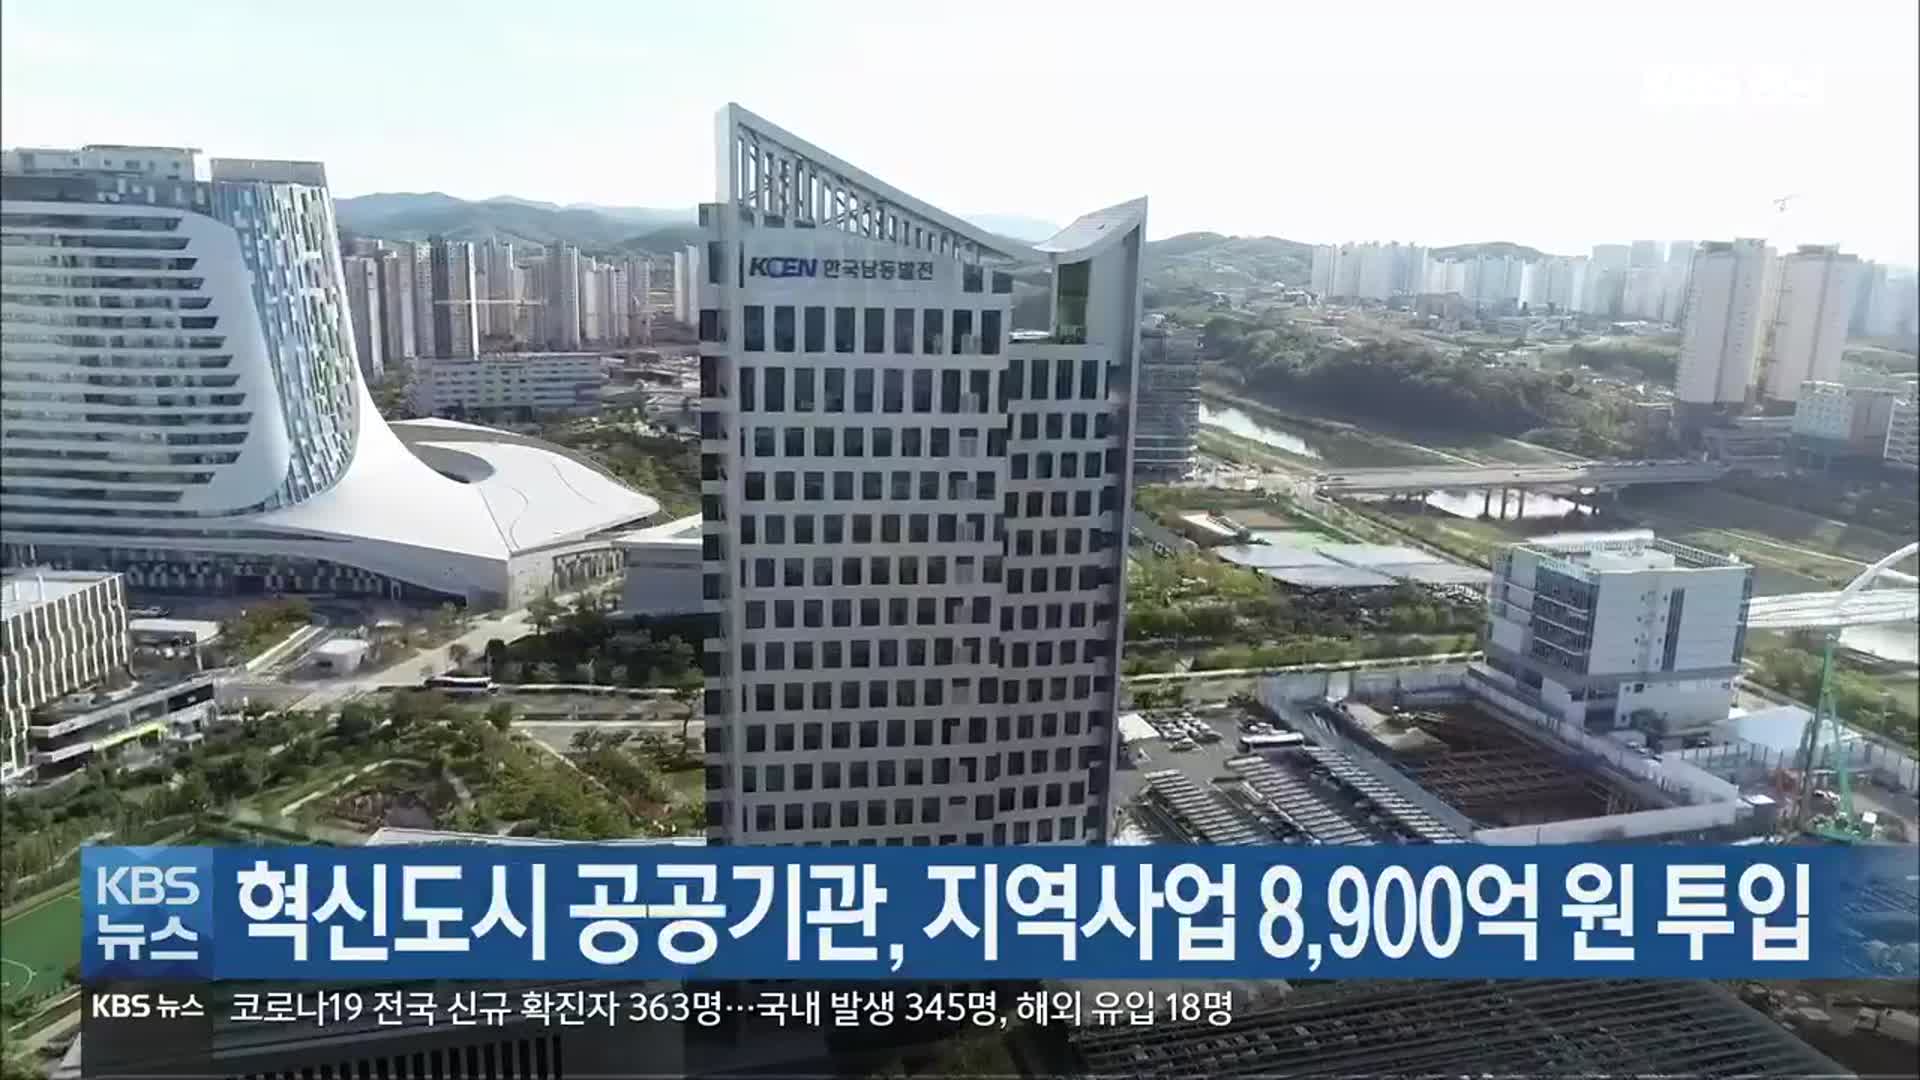 [여기는 진주] 혁신도시 공공기관, 지역사업 8,900억 원 투입 외